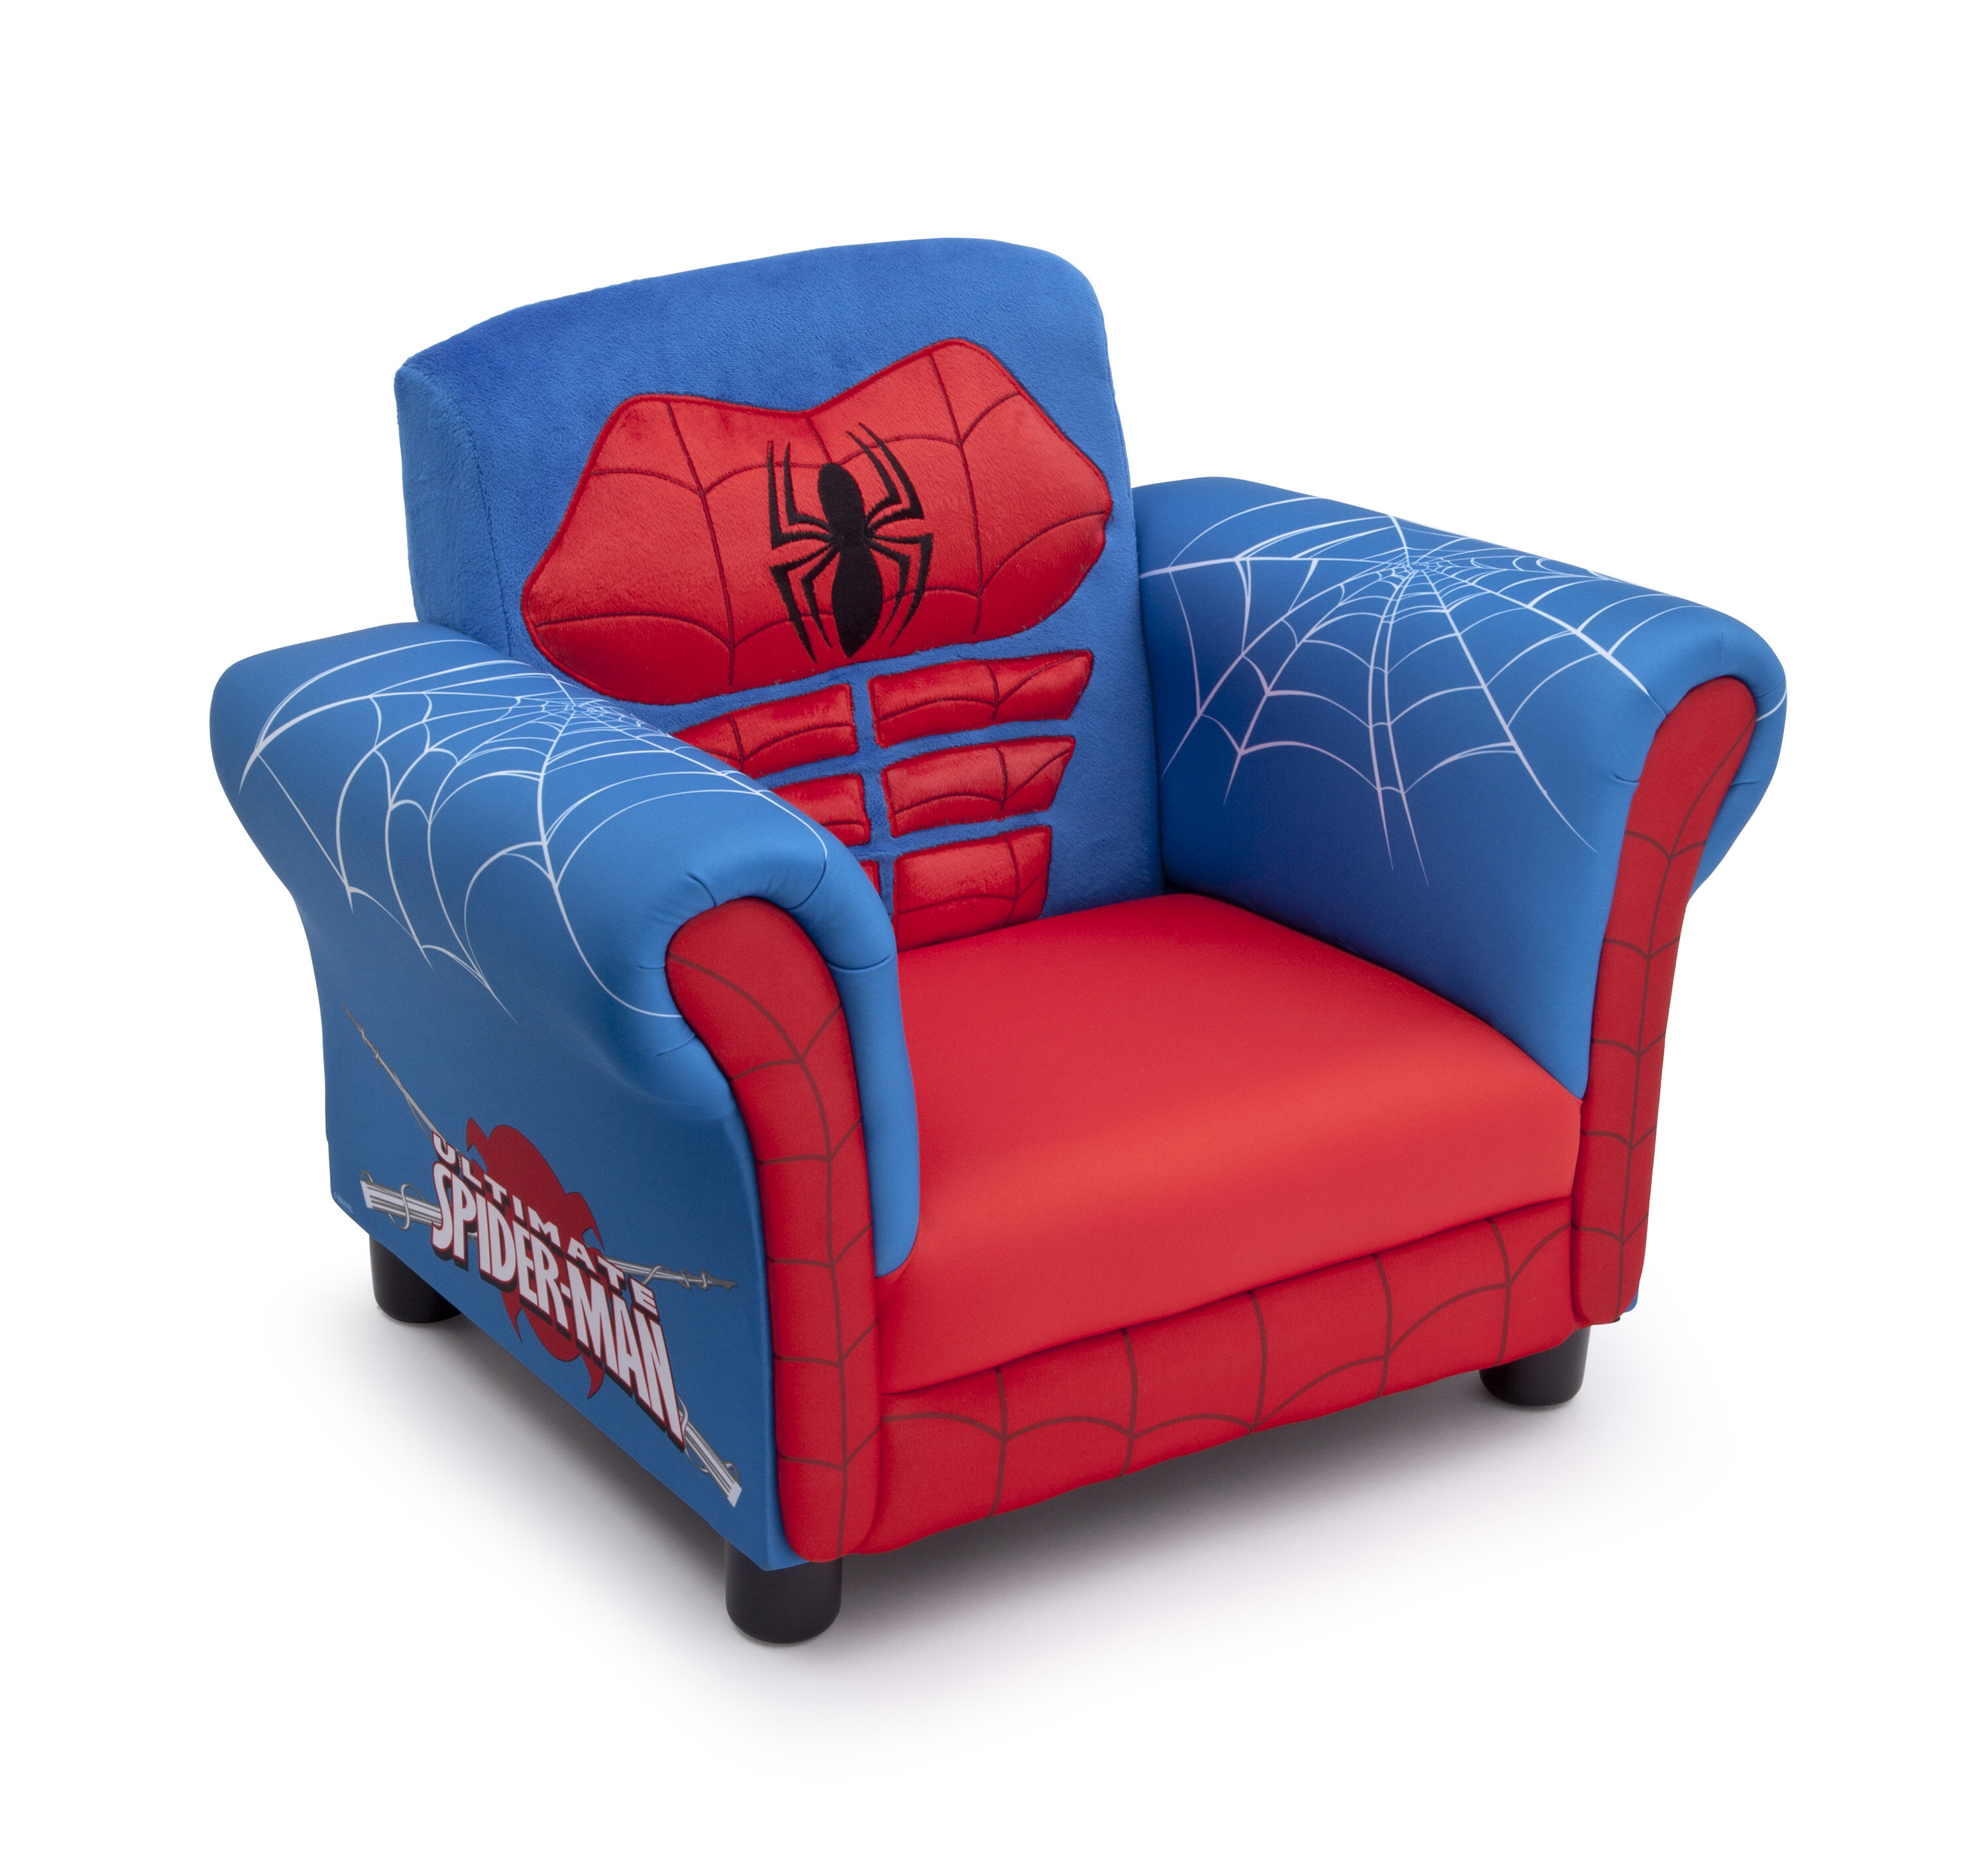 Delta Children Spider Man Kids Chair Reviews Wayfair